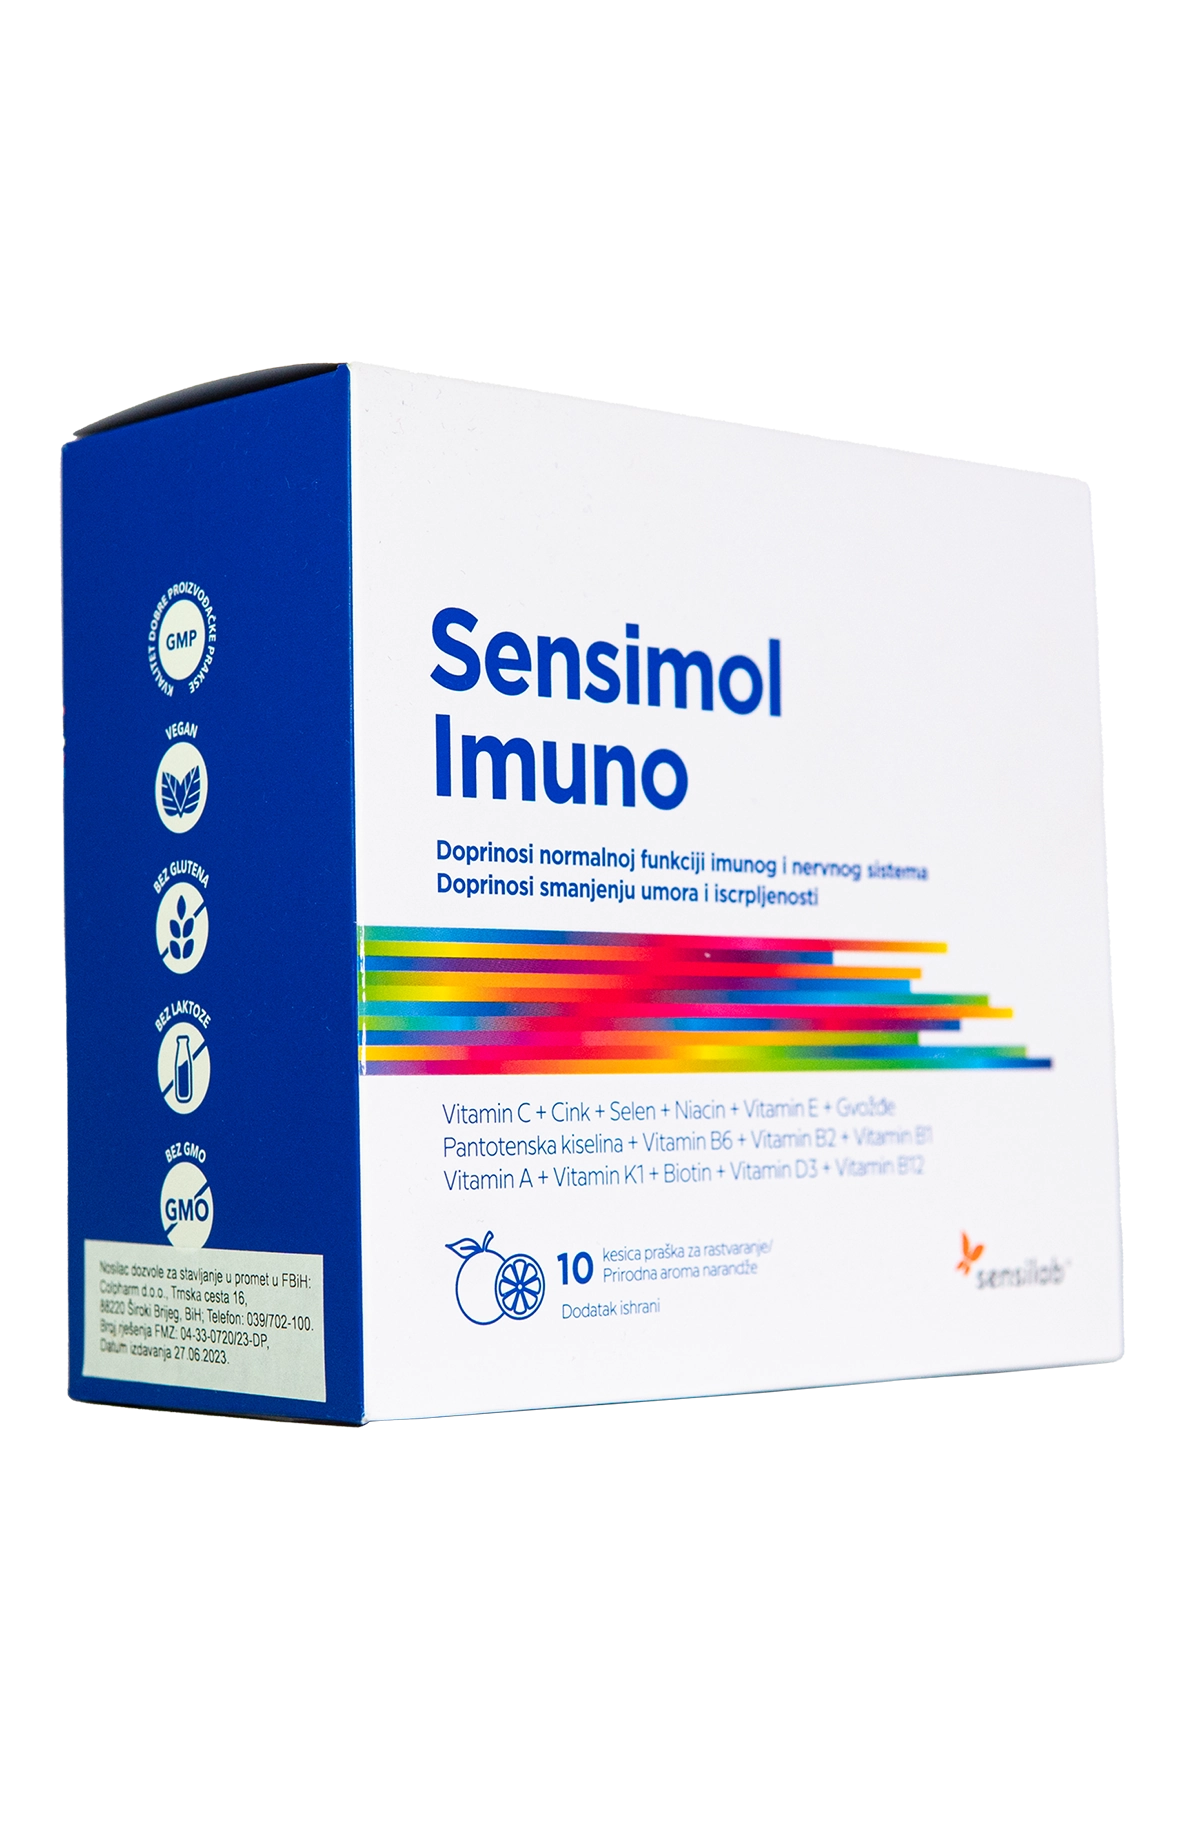 B Pharm Sensimol Imuno